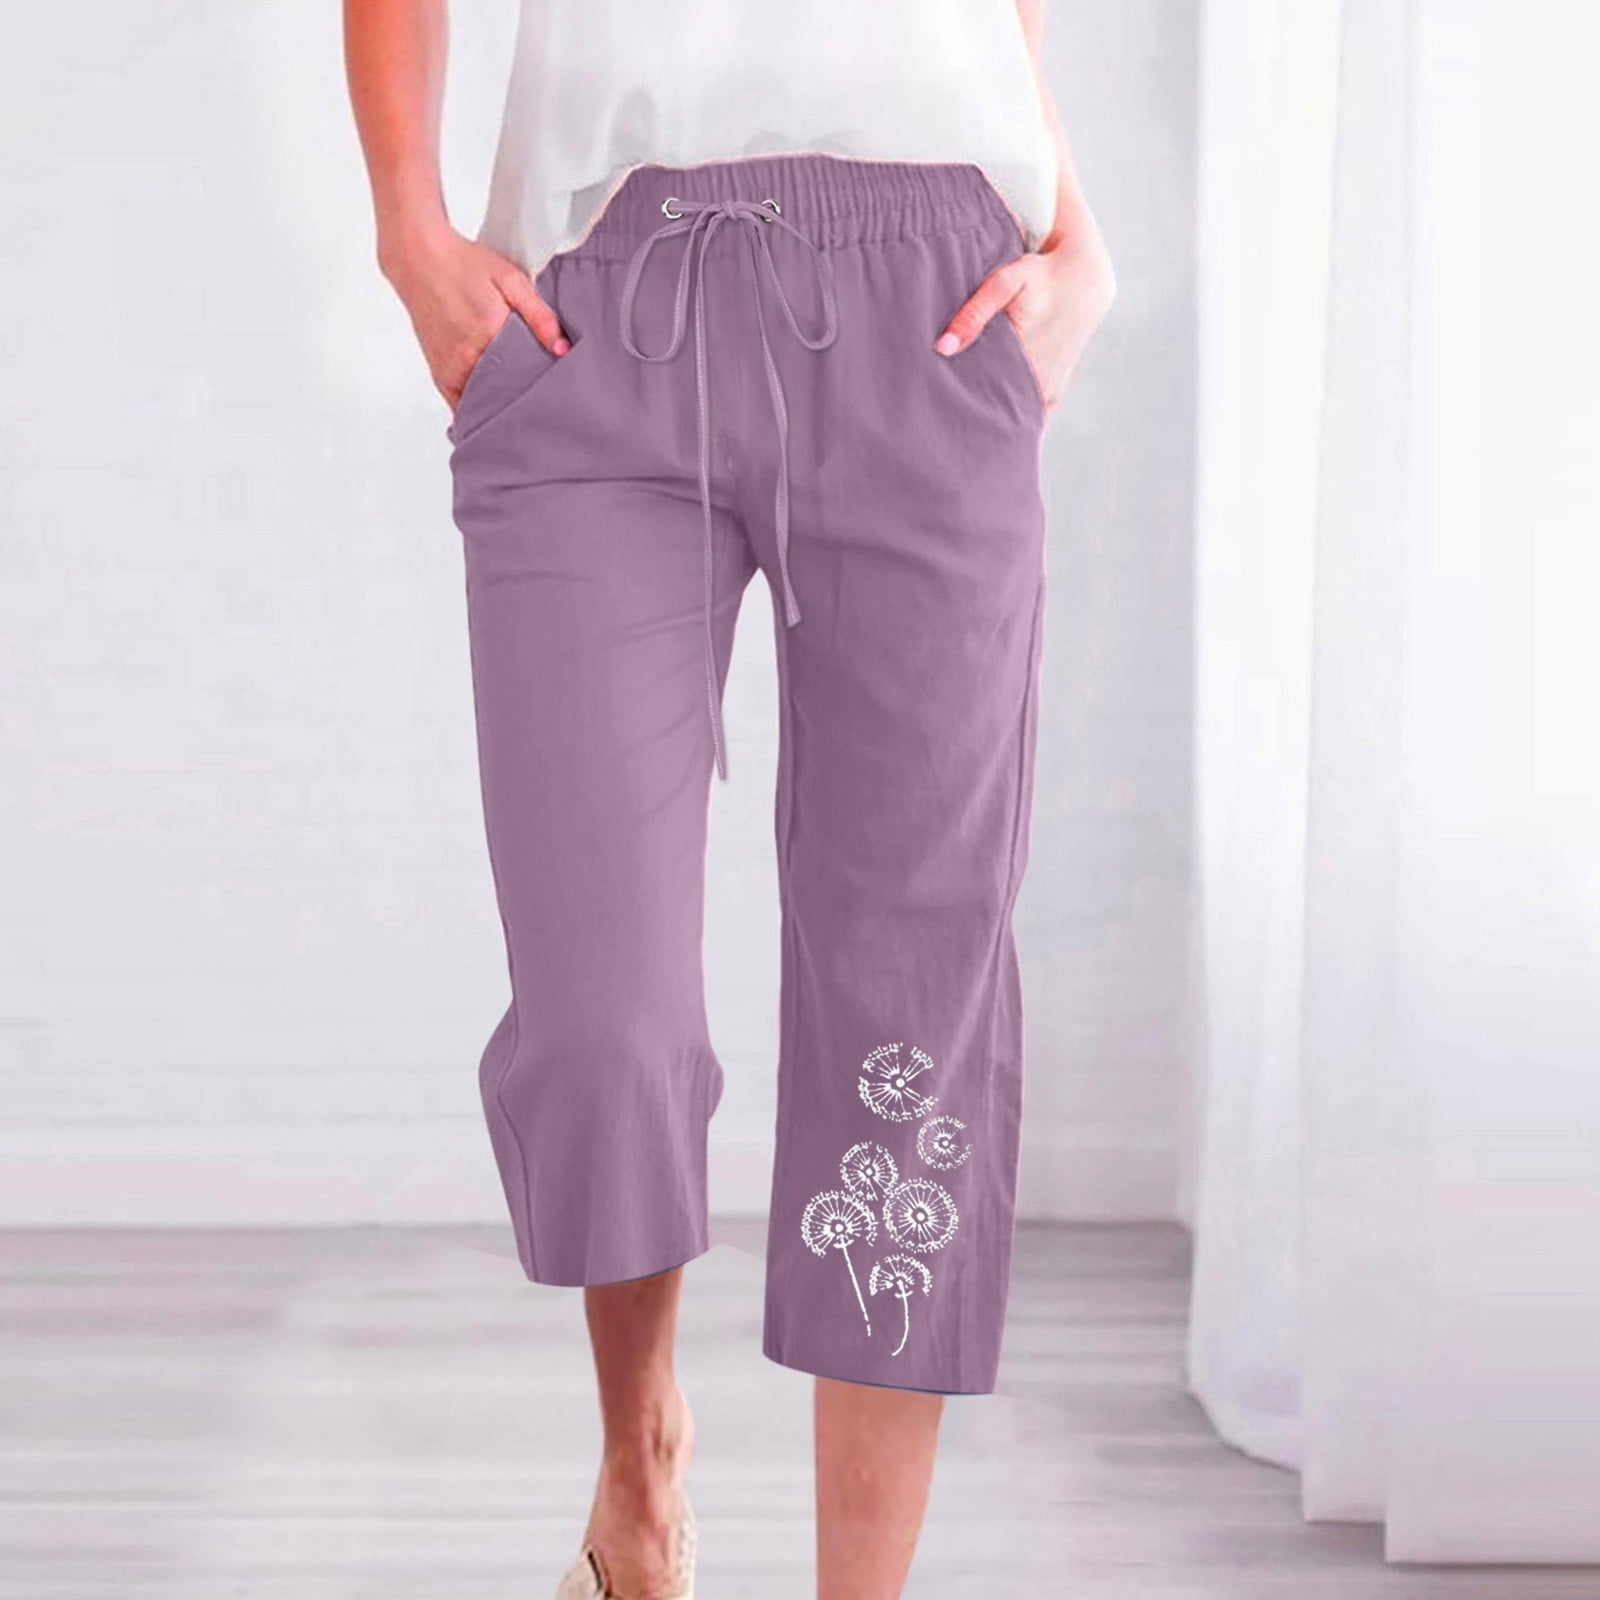 Peasant Pants for Women Summer Beach Cotton Linen Capris 3/4